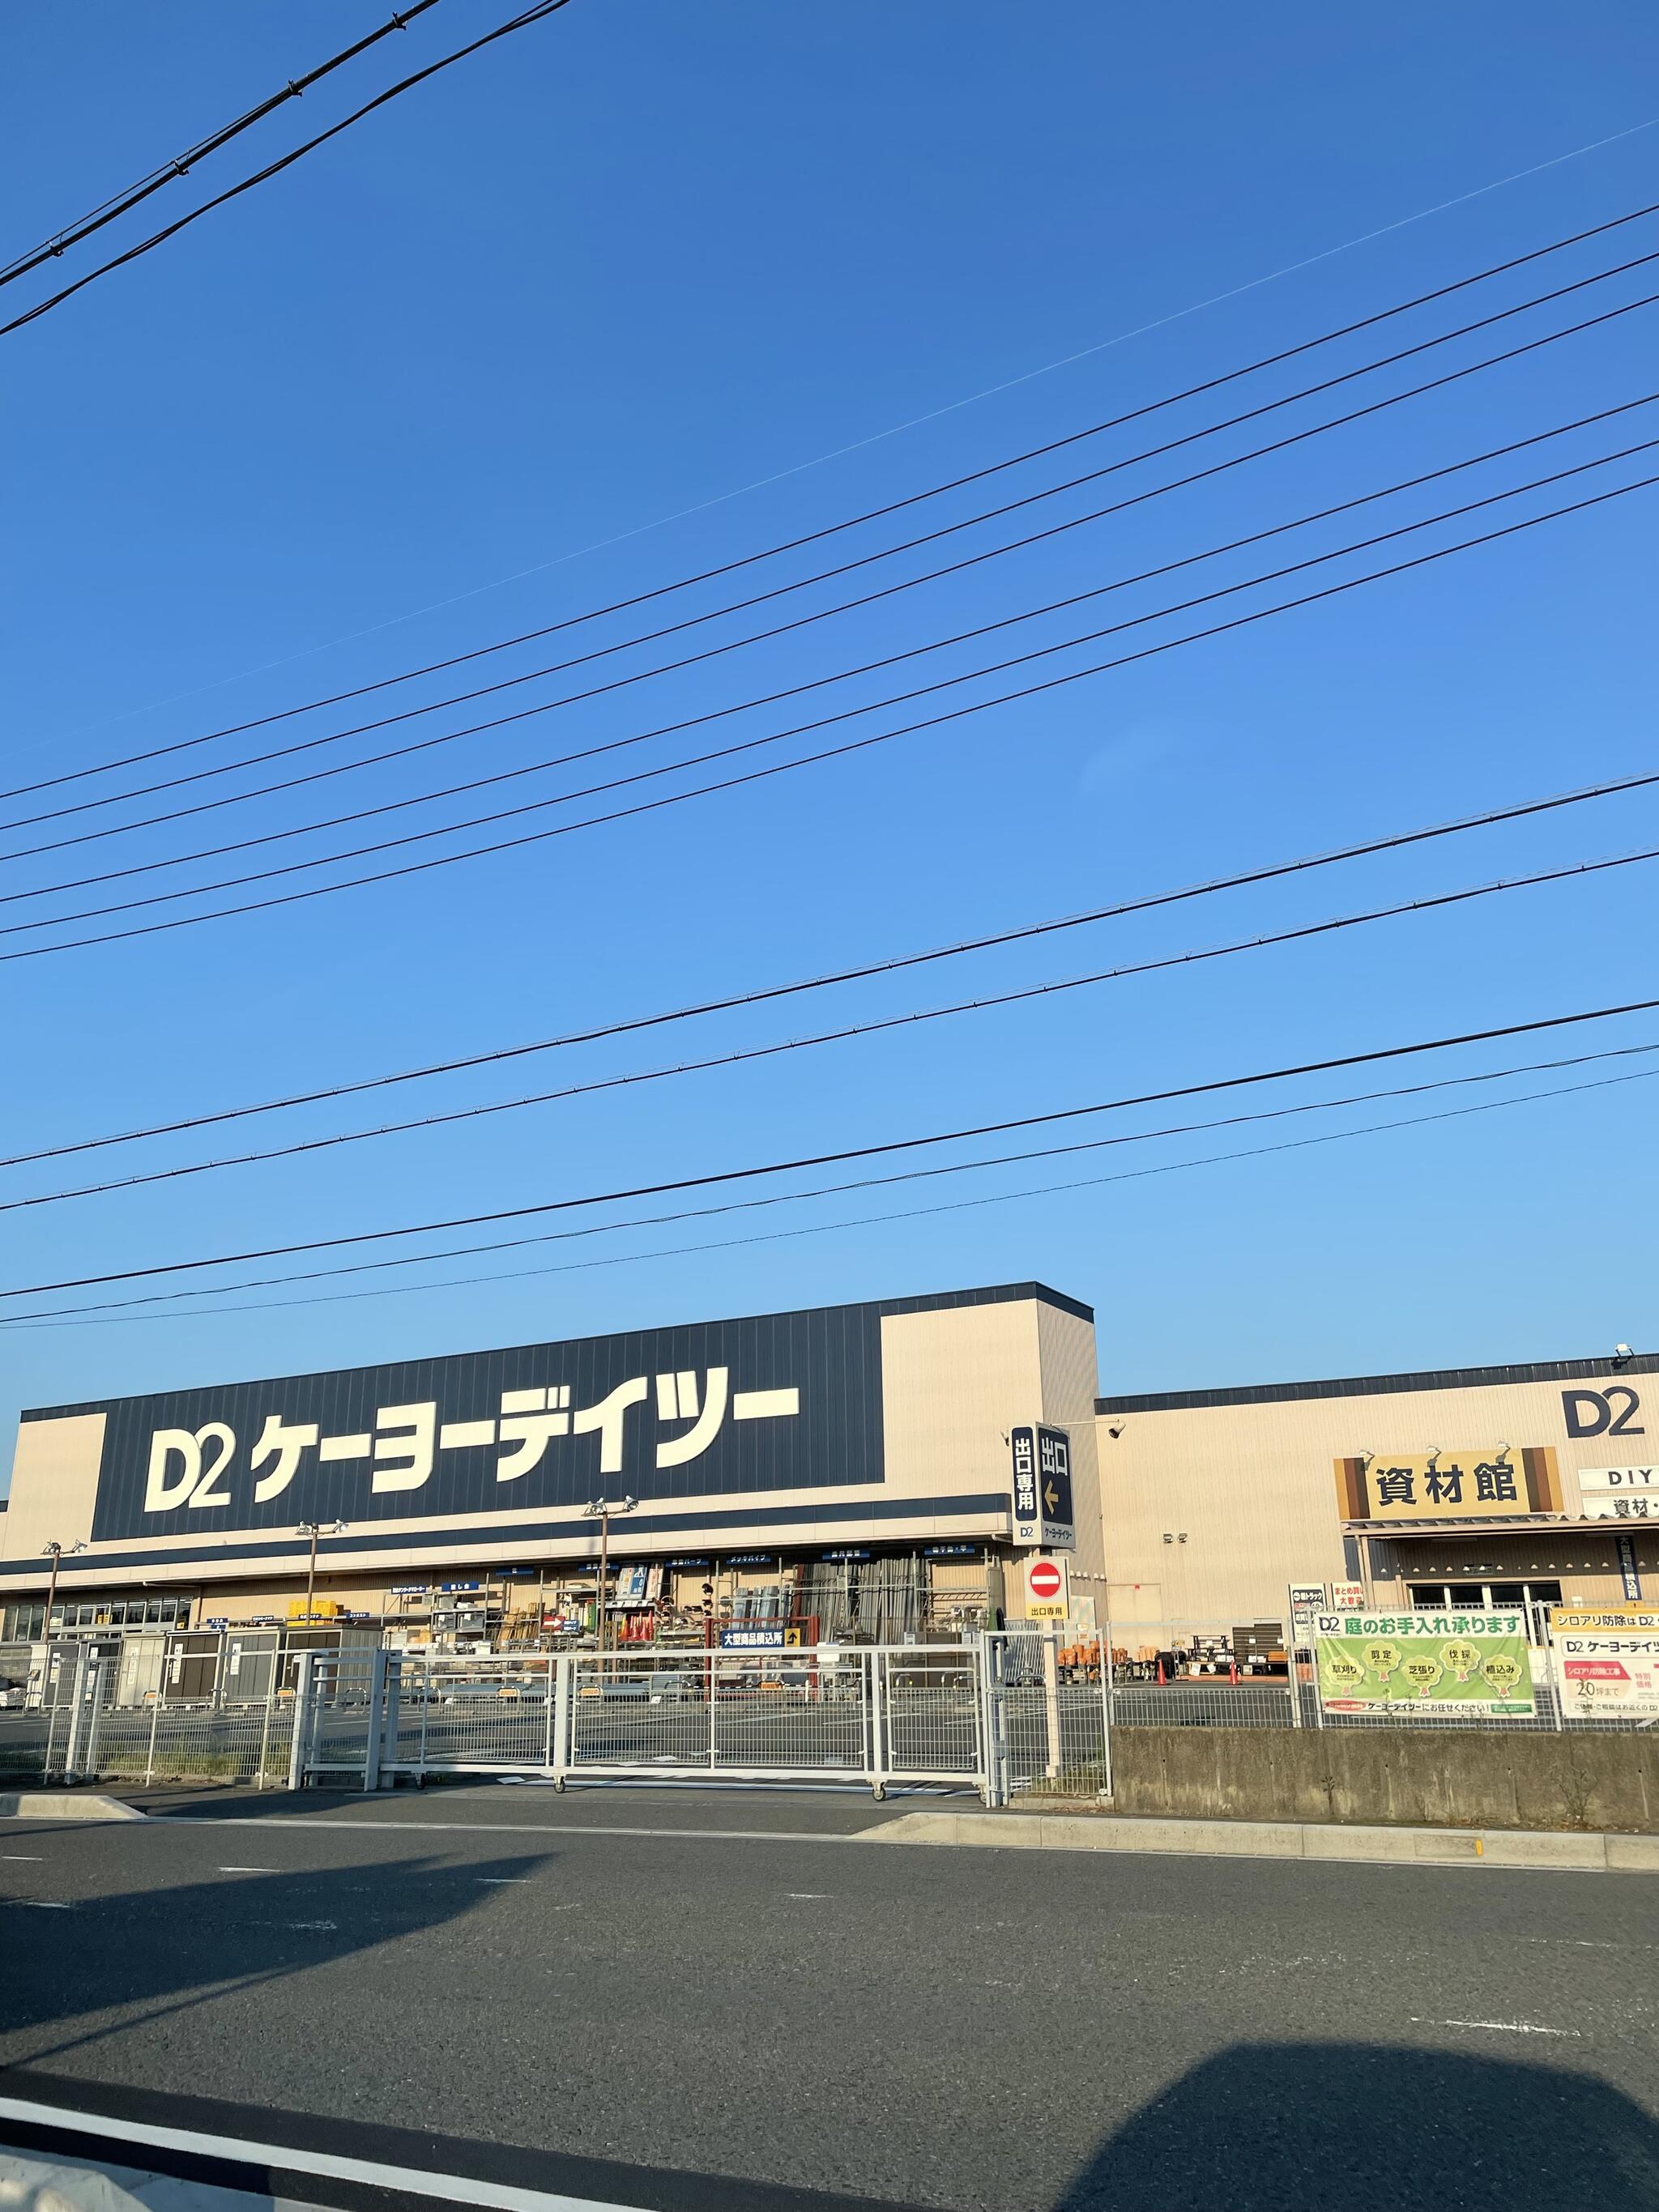 ケーヨーデイツー 大垣赤坂店の代表写真5